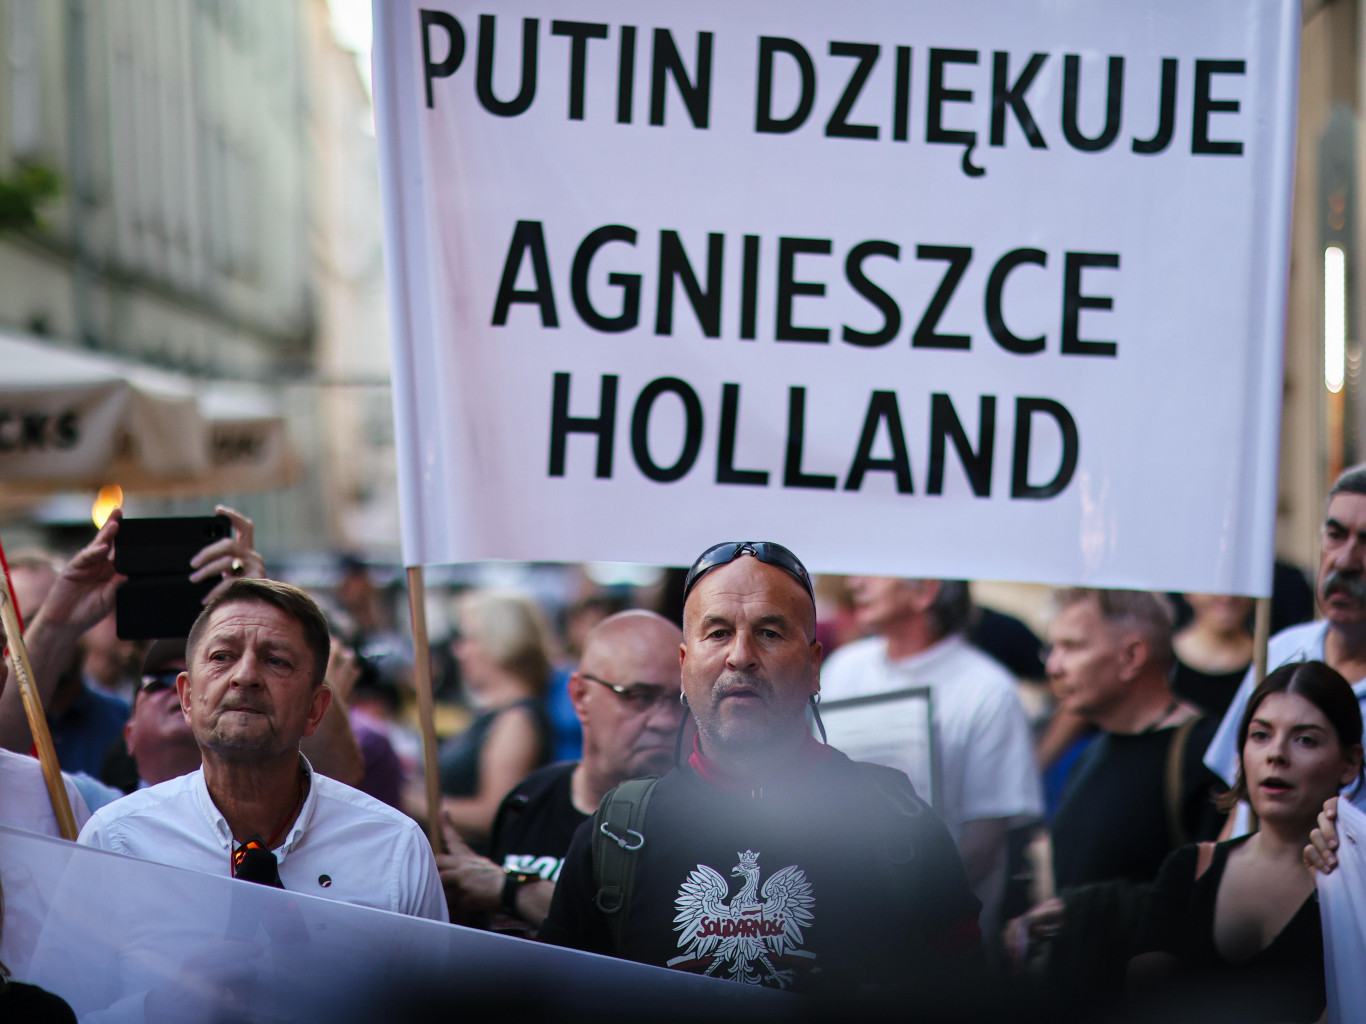 Фейки недели: украинцы в Таллине избили русскоязычную женщину, польские власти запретили фильм о кризисе мигрантов 